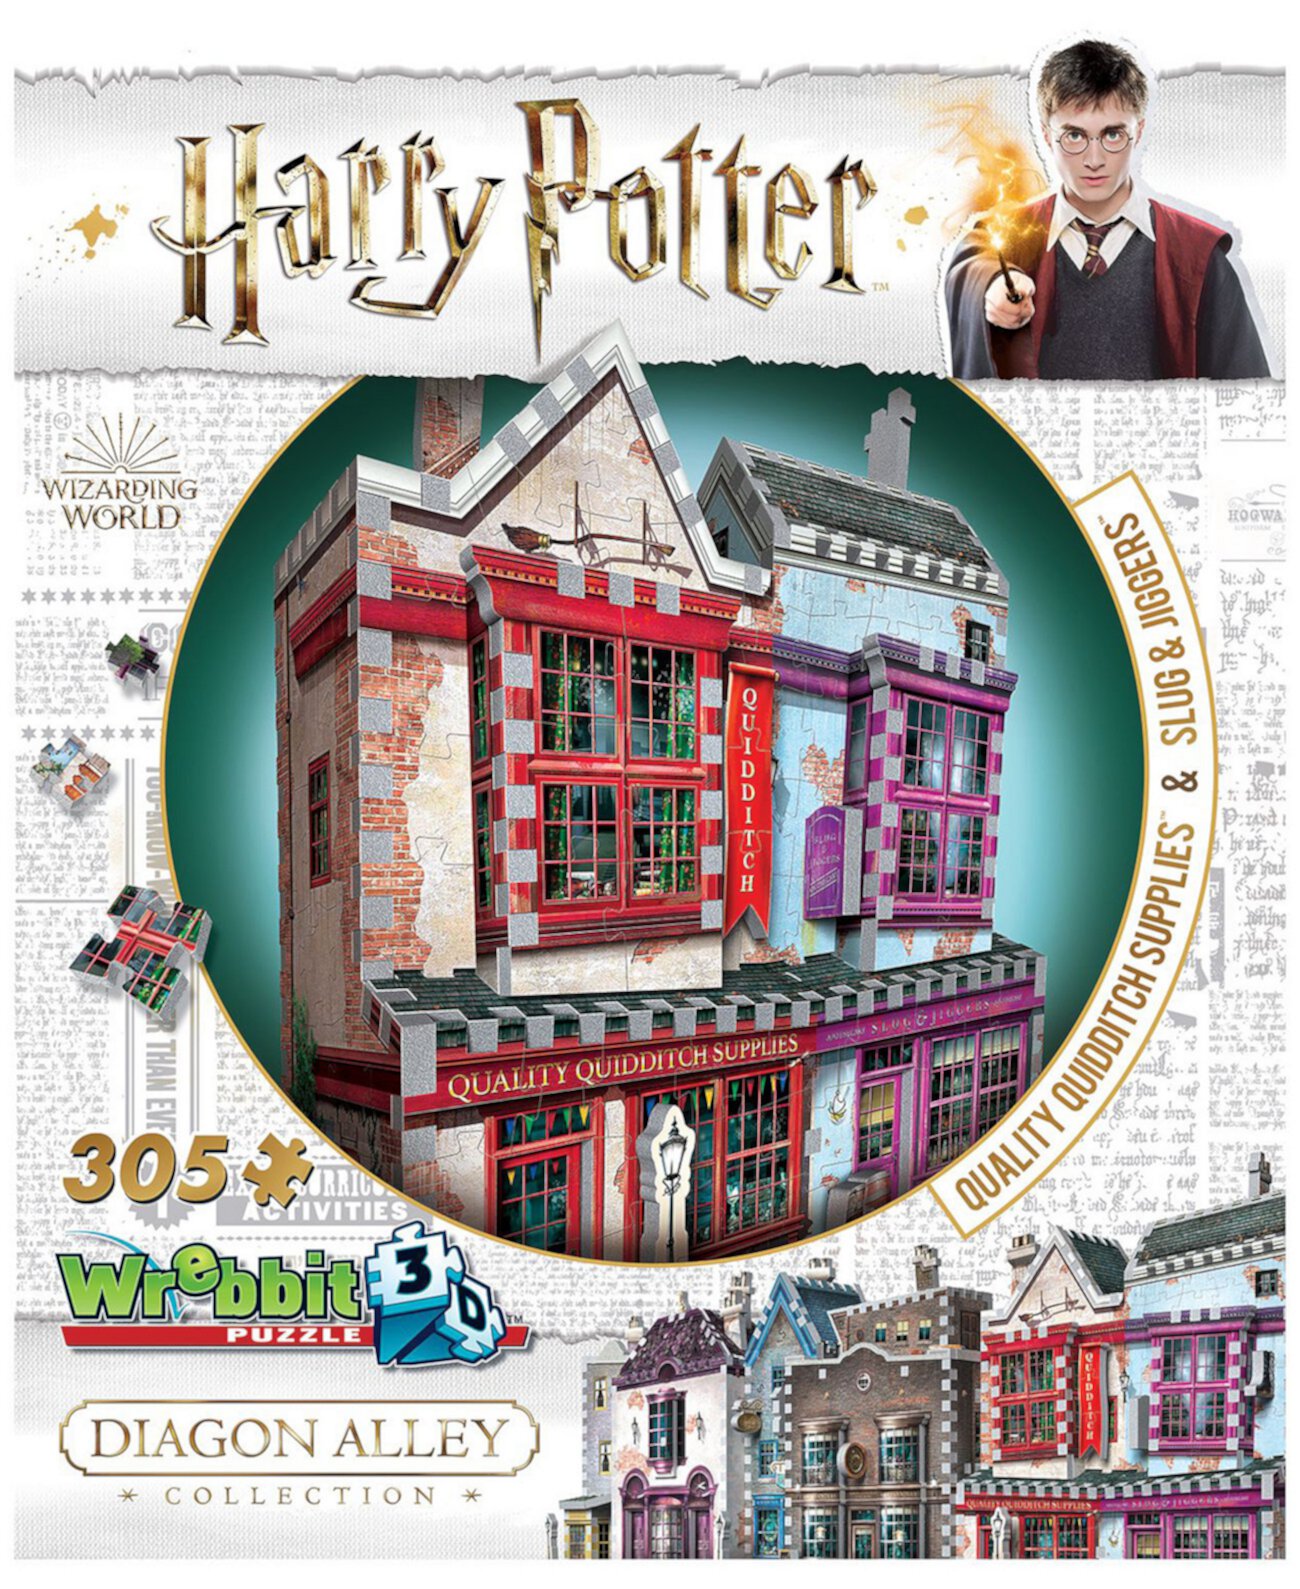 Гарри Поттер Daigon Alley Collection - Качественная утварь для квиддича, 3D-головоломка «Слизни и джиггеры» - 305 штук Wrebbit